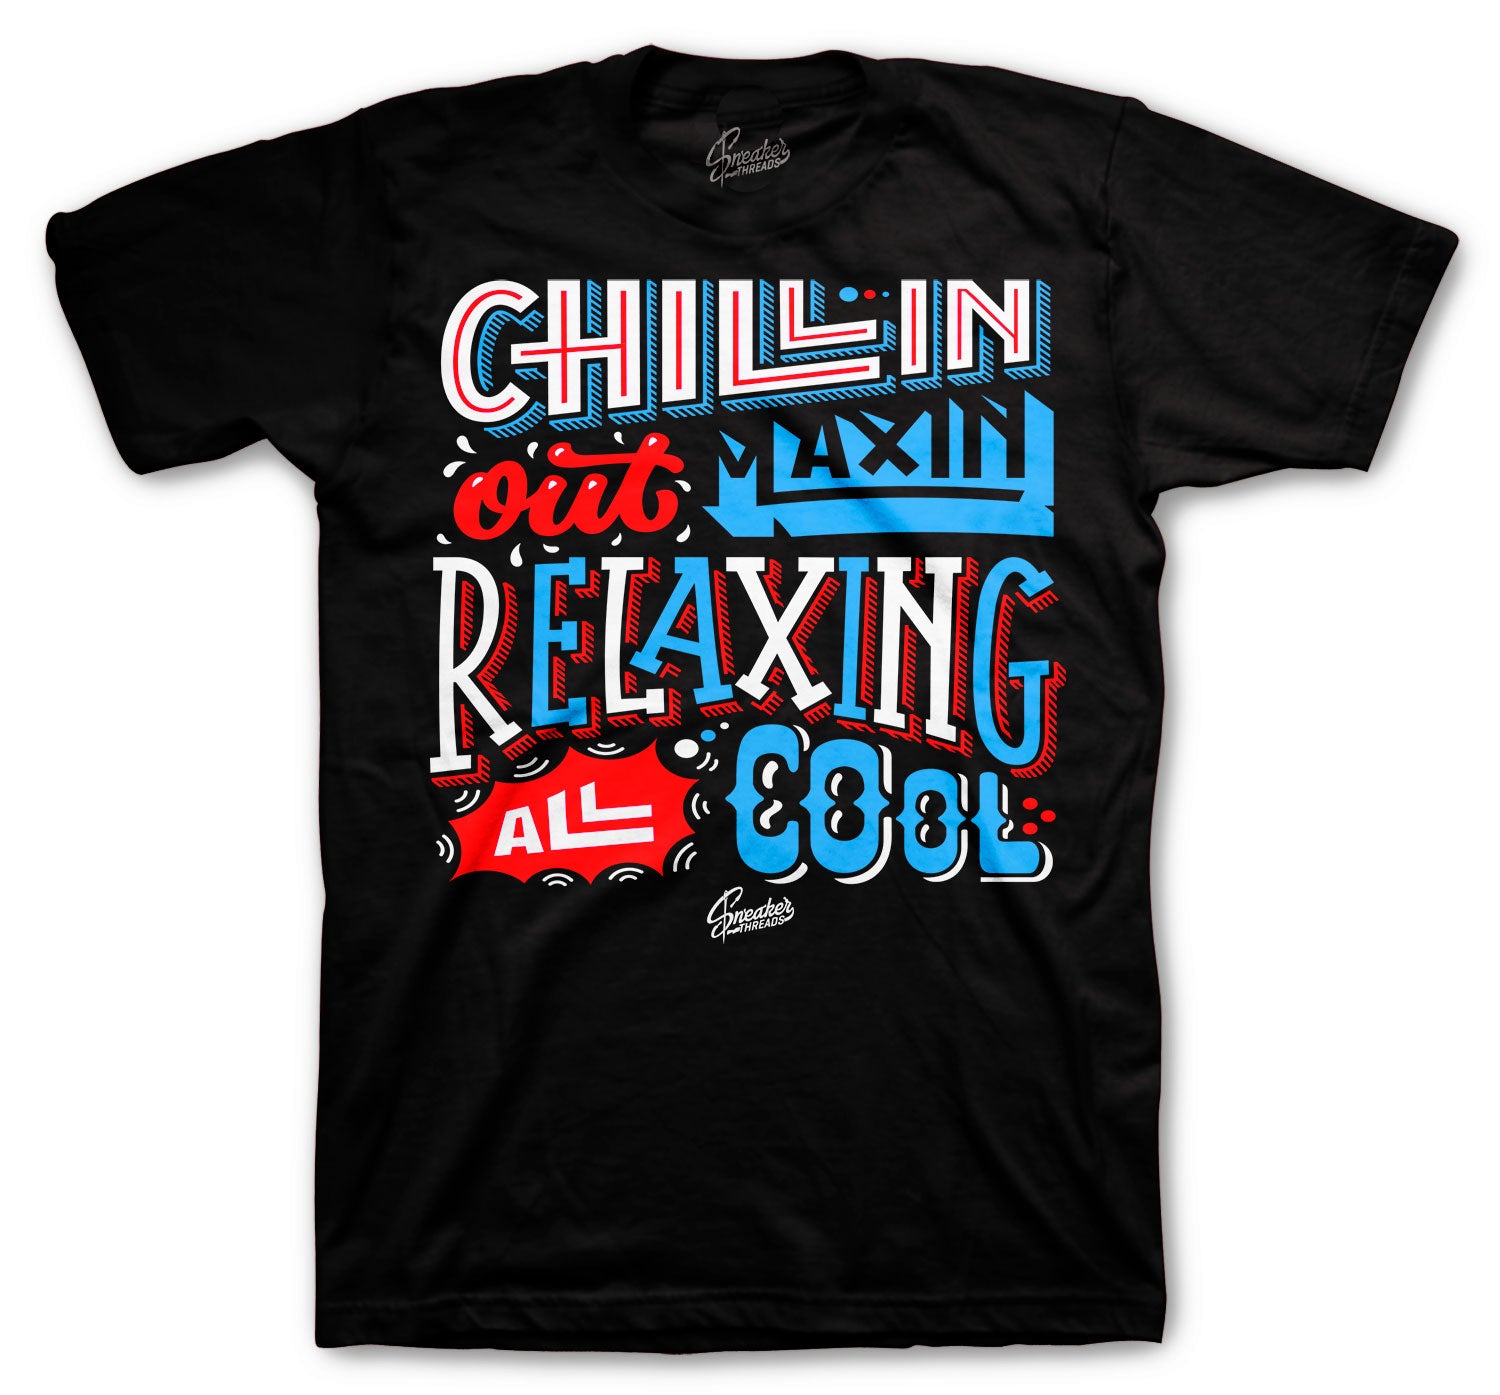 Retro 1 NC To CHI Shirt - Chillen Relaxin - Black